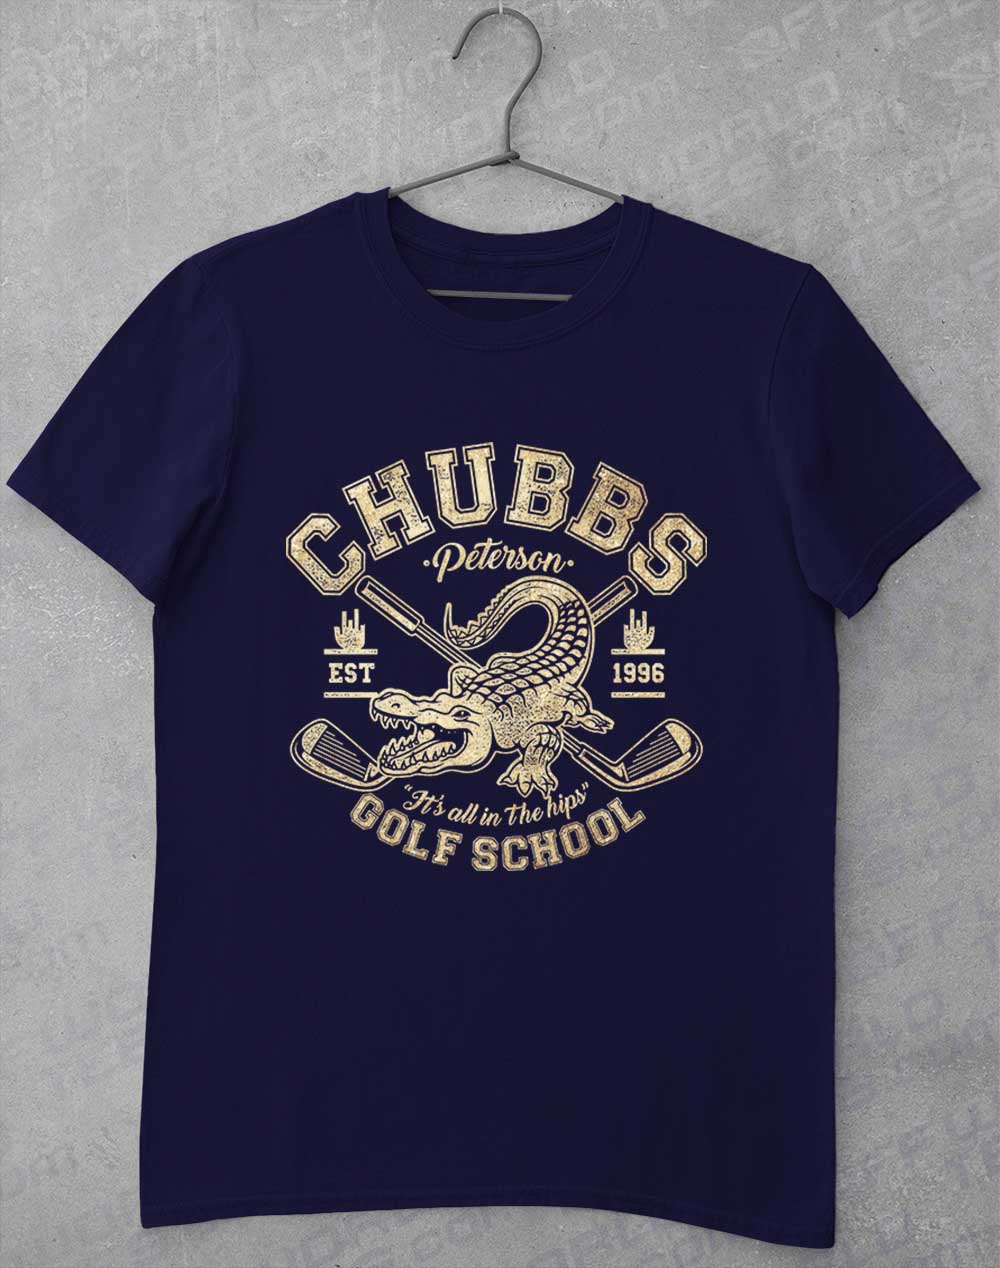 Navy - Chubb's Golf School 1996 T-Shirt